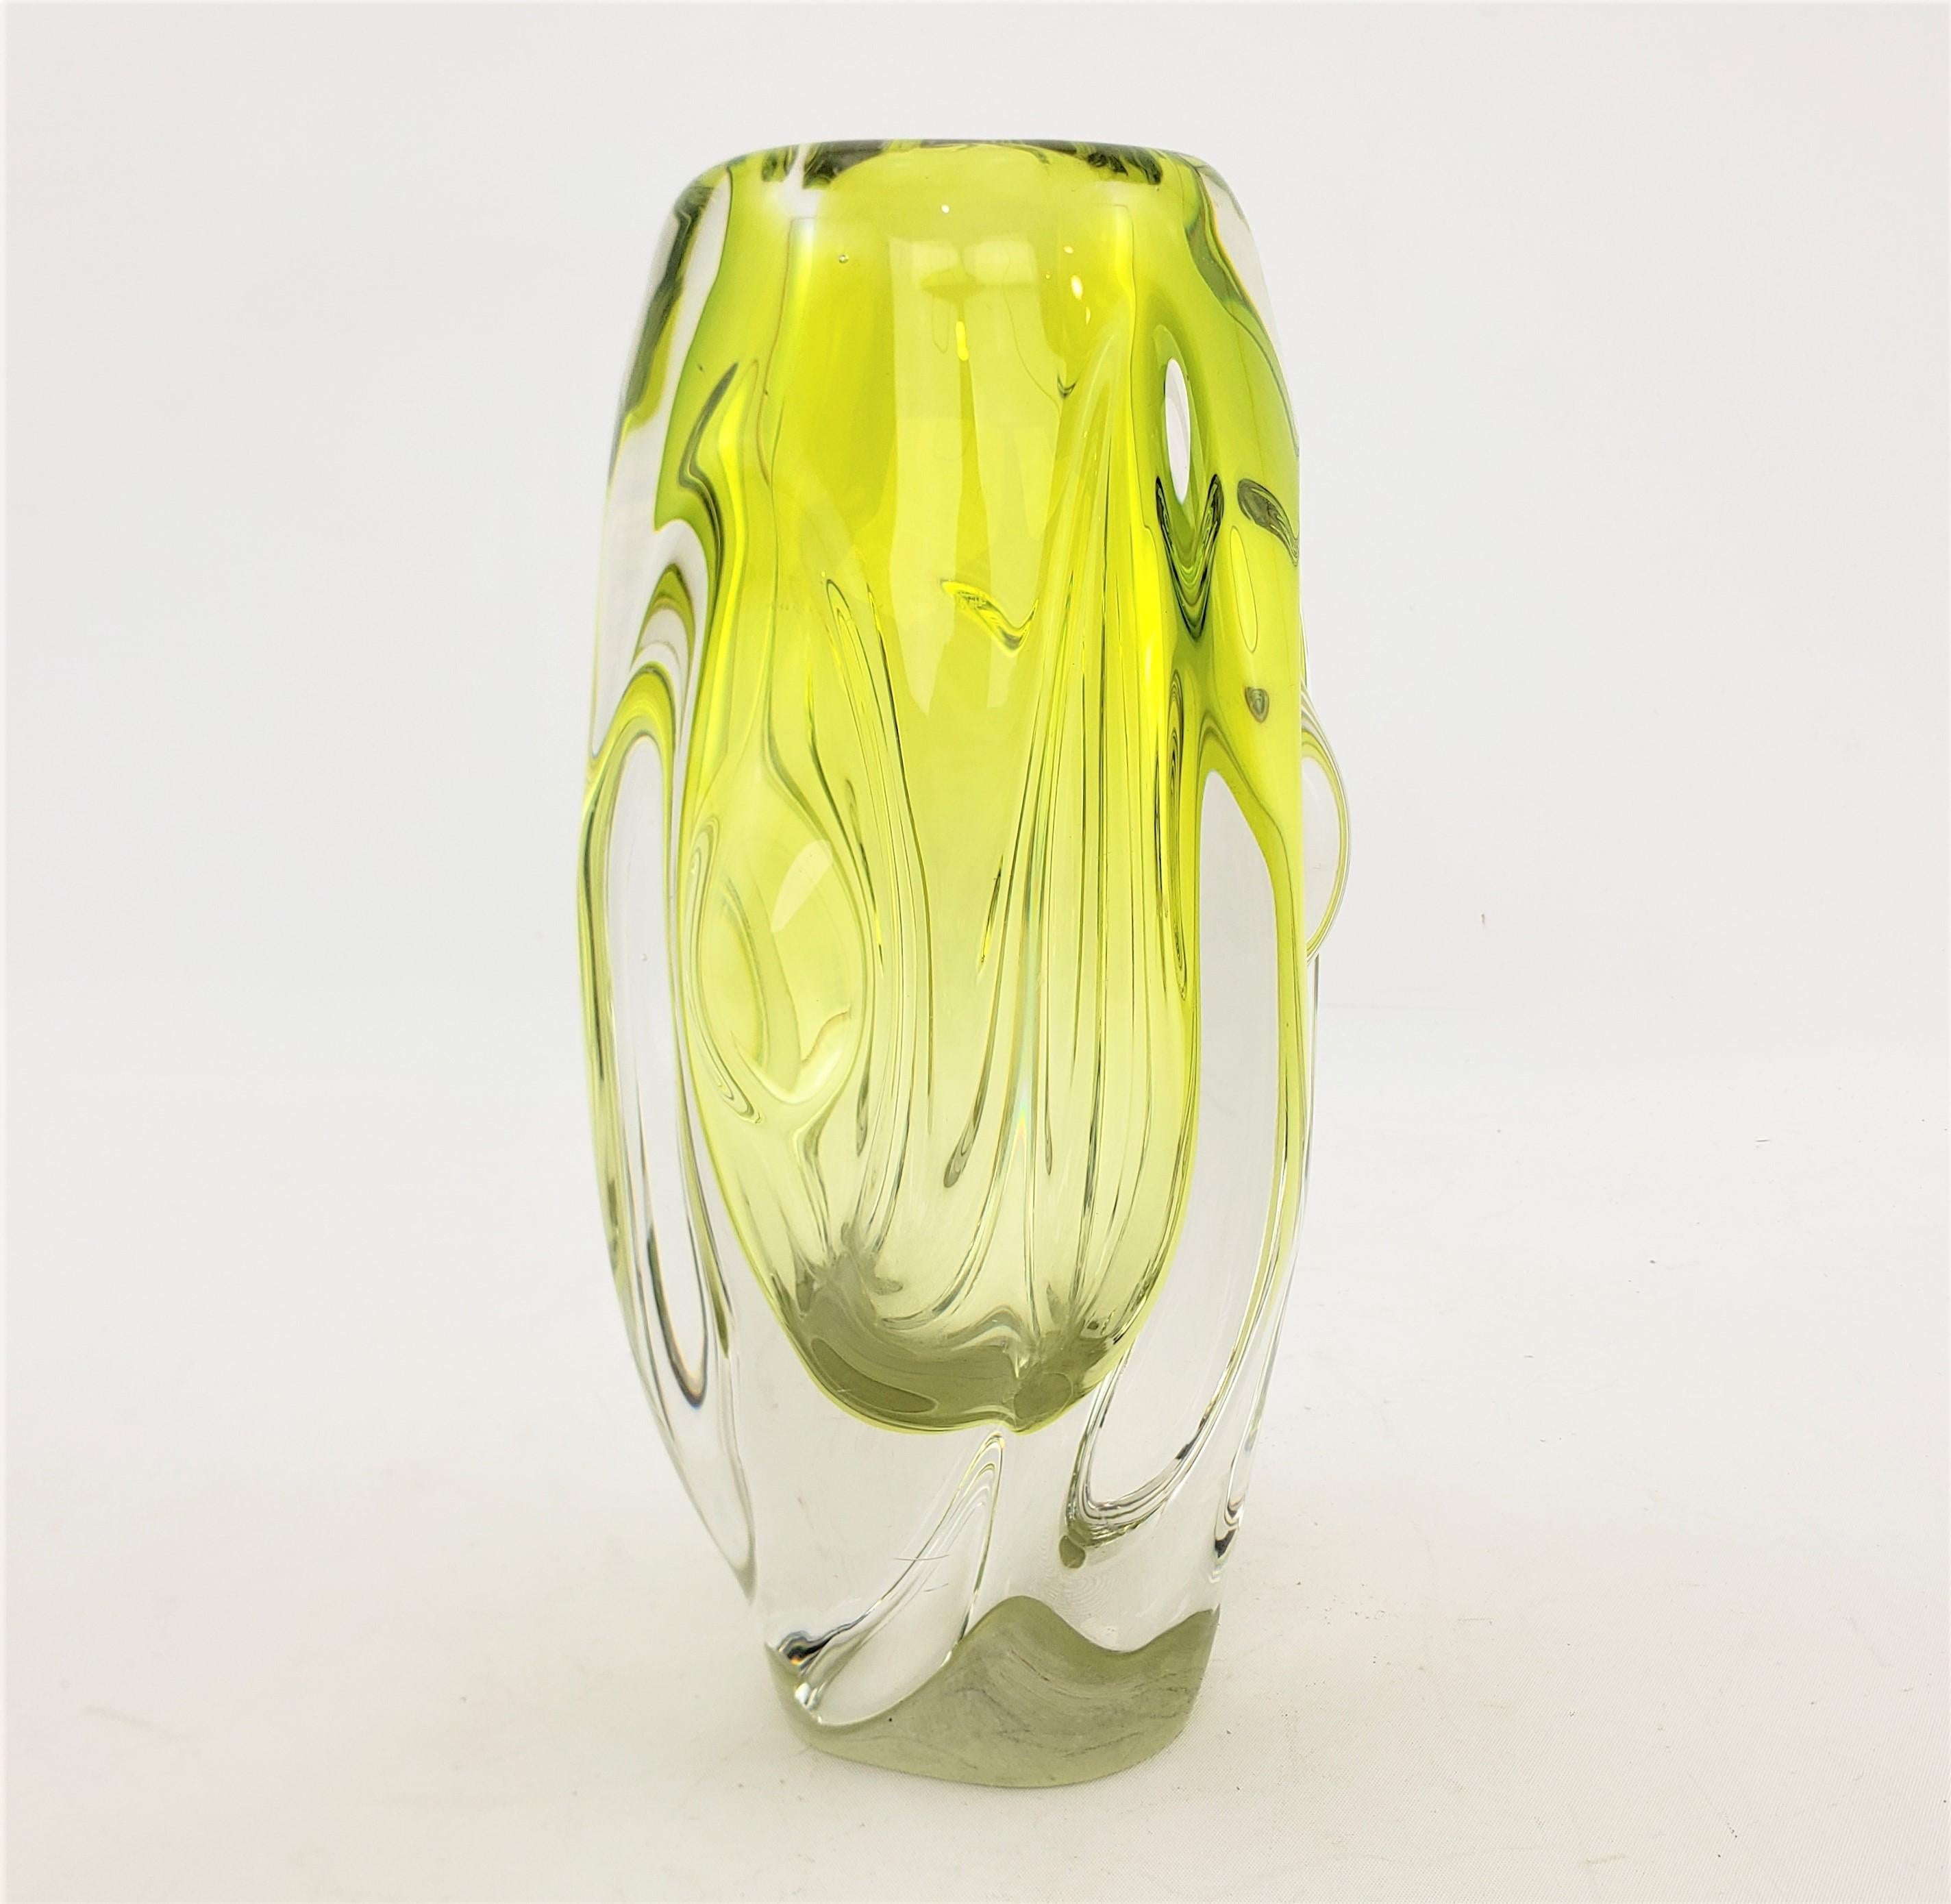 Ce vase en verre d'art n'est pas signé, mais on présume qu'il provient de la République tchèque et qu'il date d'environ 1955. Il est réalisé dans le style moderne du milieu du siècle. Ce vase est fait d'un verre clair épais avec une inclusion